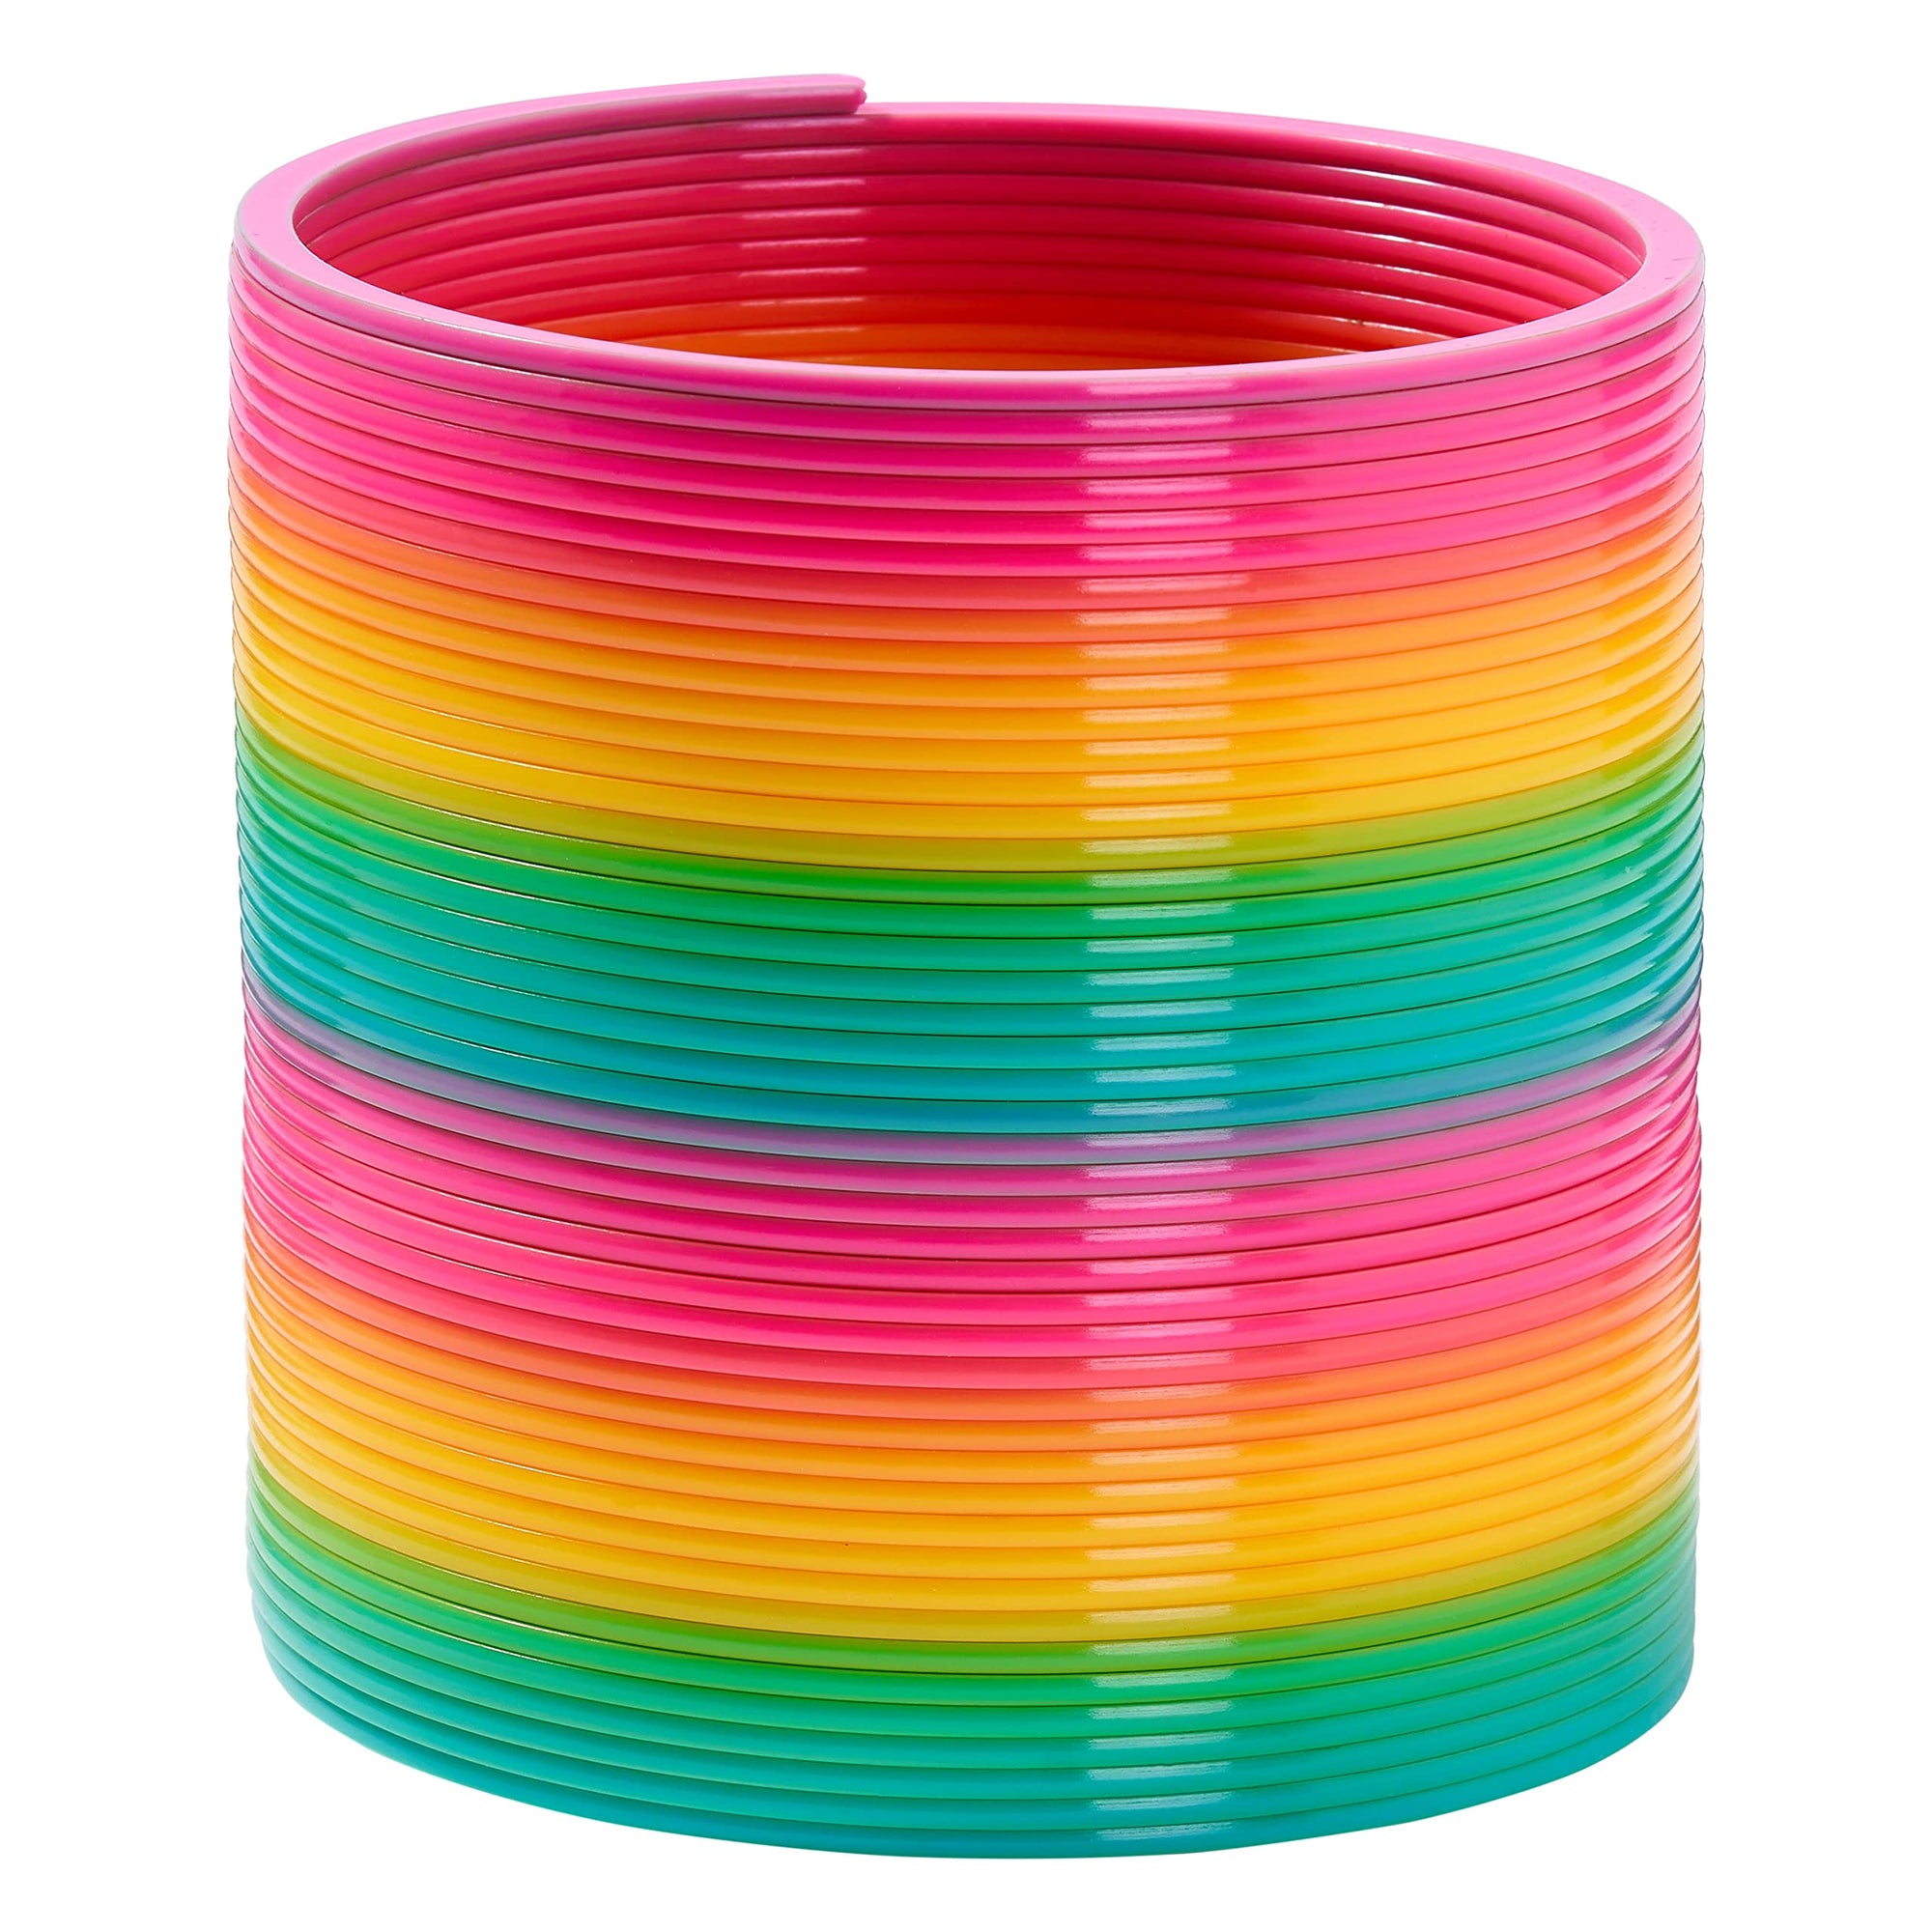 Giant Rainbow Spring 15cm (Slinky)